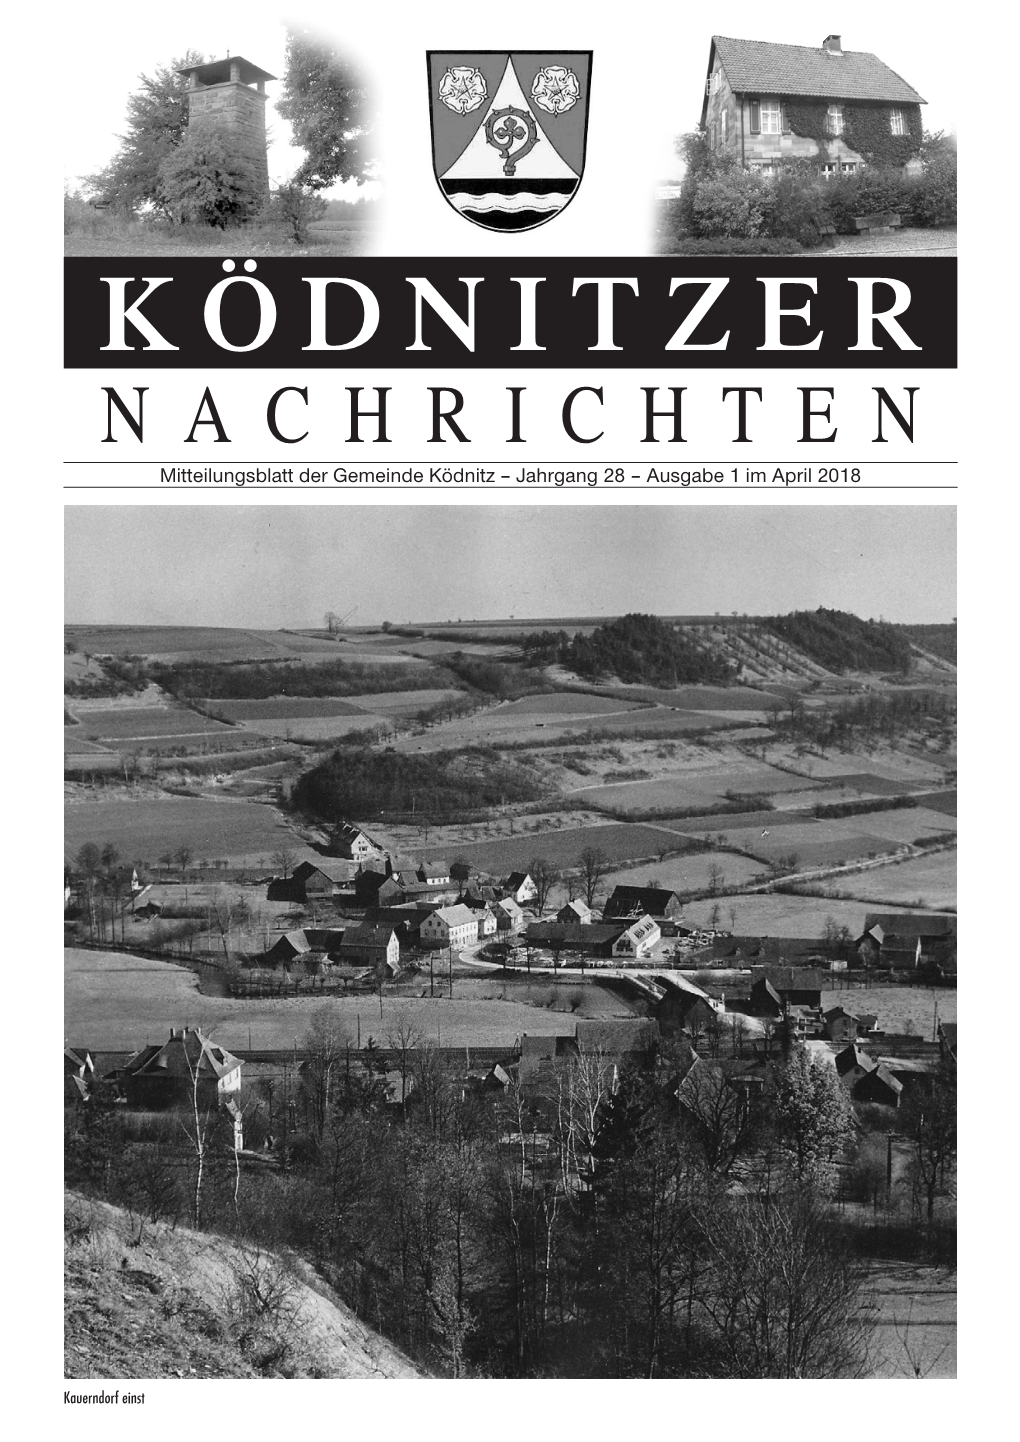 Koednitzer Nachrichten April 2018.Pdf